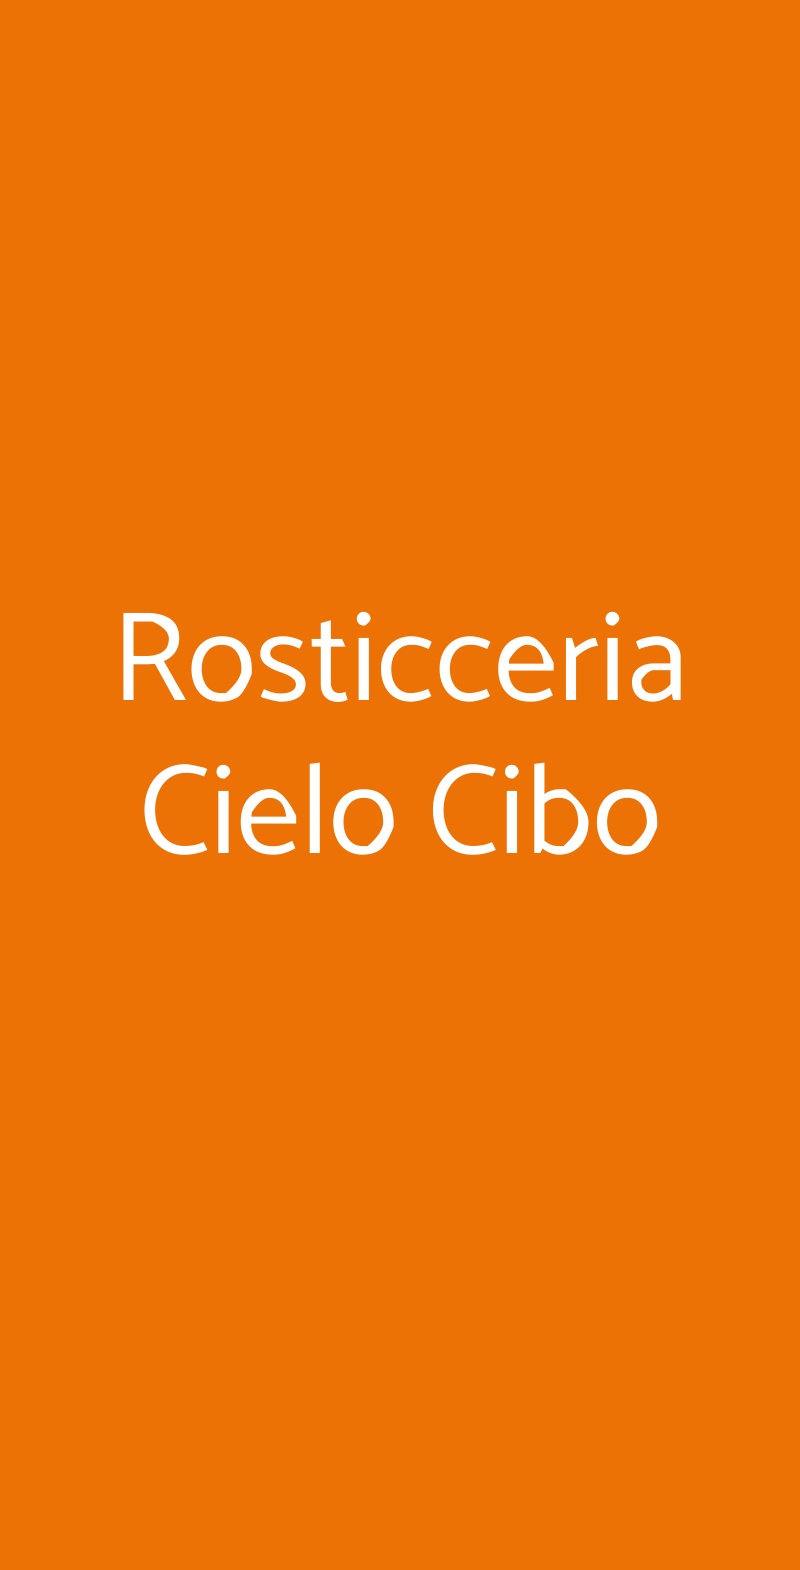 Rosticceria Cielo Cibo Bologna menù 1 pagina